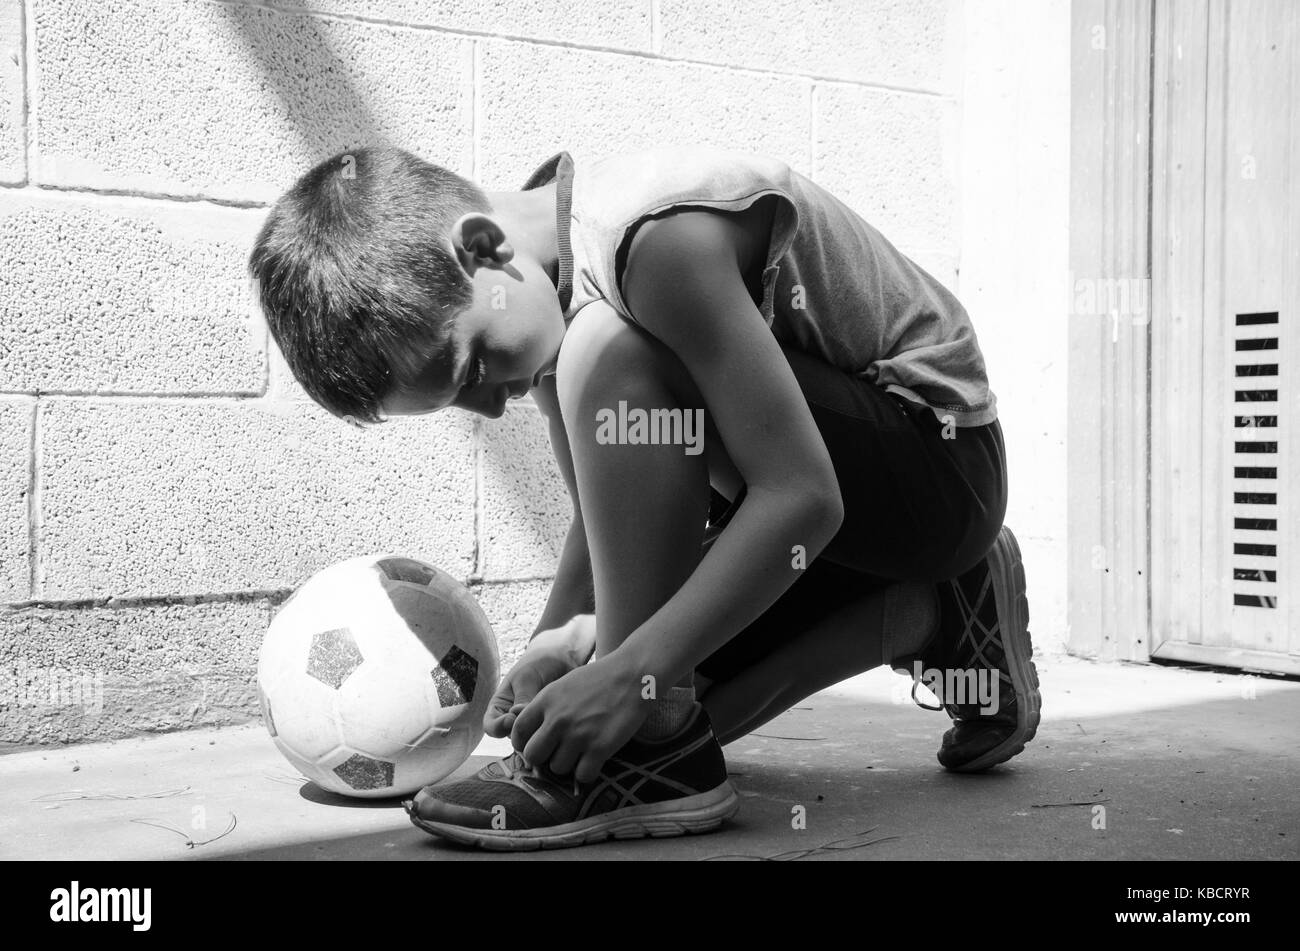 Straße Fußball. Ein junger Fußballer trägt seine Schuhe und ist bereit für ein einsames Training in der Garage. Schwarz-weiß-Bild. Stockfoto